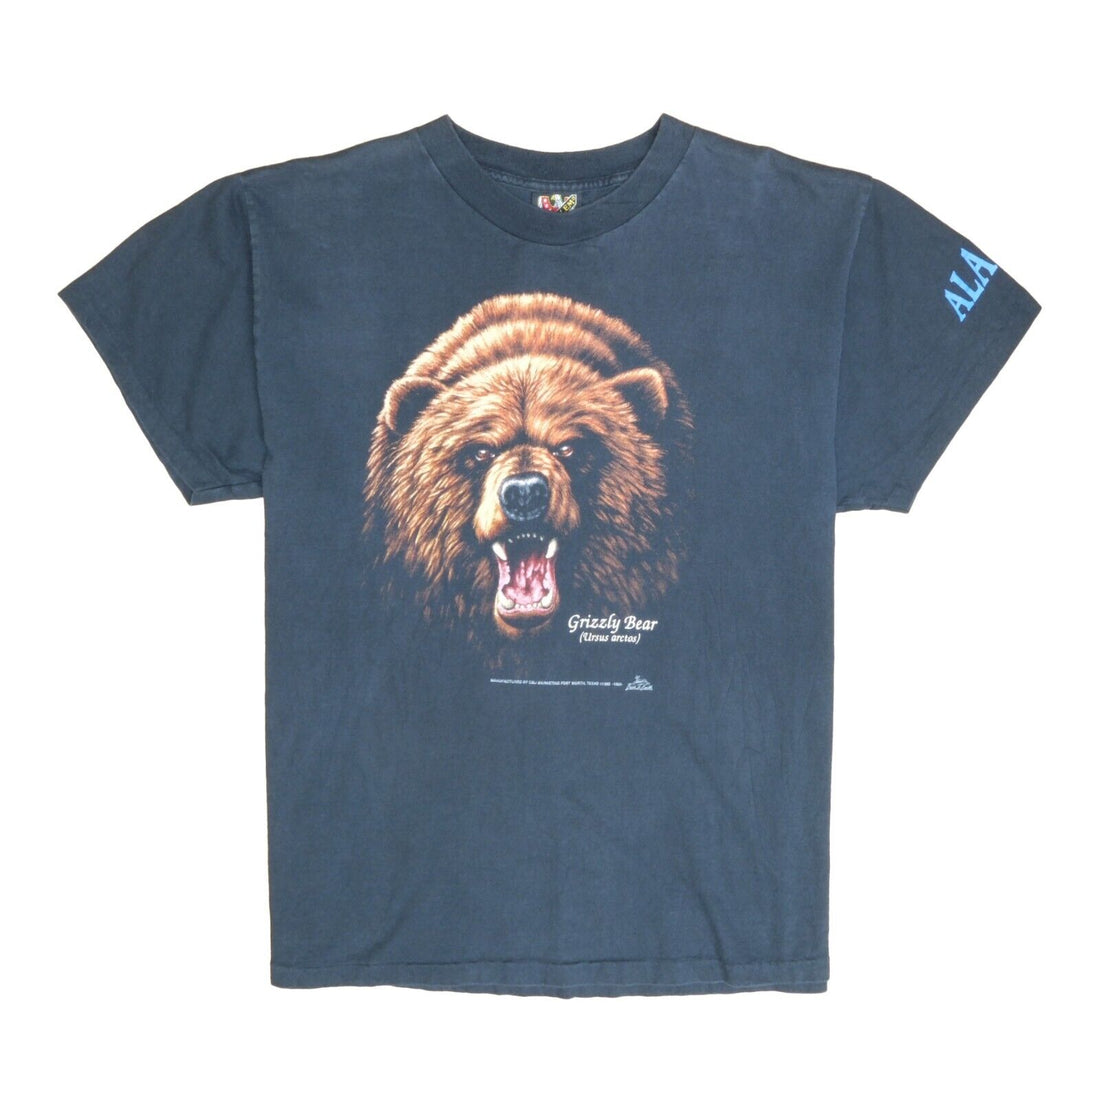 Vintage Grizzly Bear Ursos Arctos 3D Emblem T-Shirt Size XL Black 1992 90s